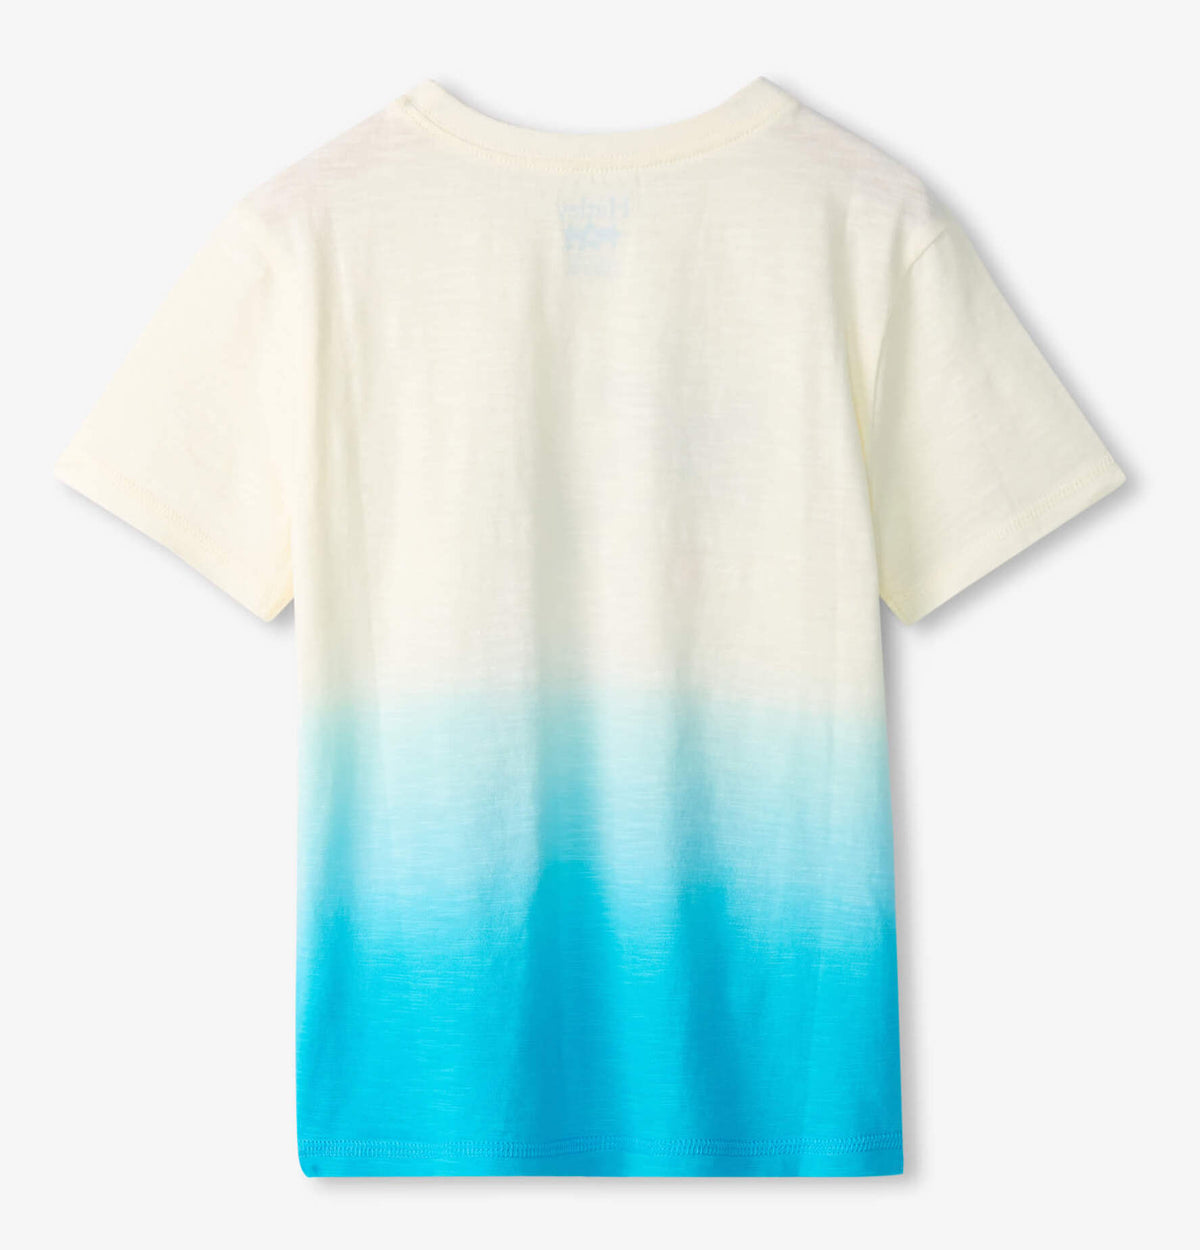 Jungen T-Shirt Aloha Graphic Tee Blau